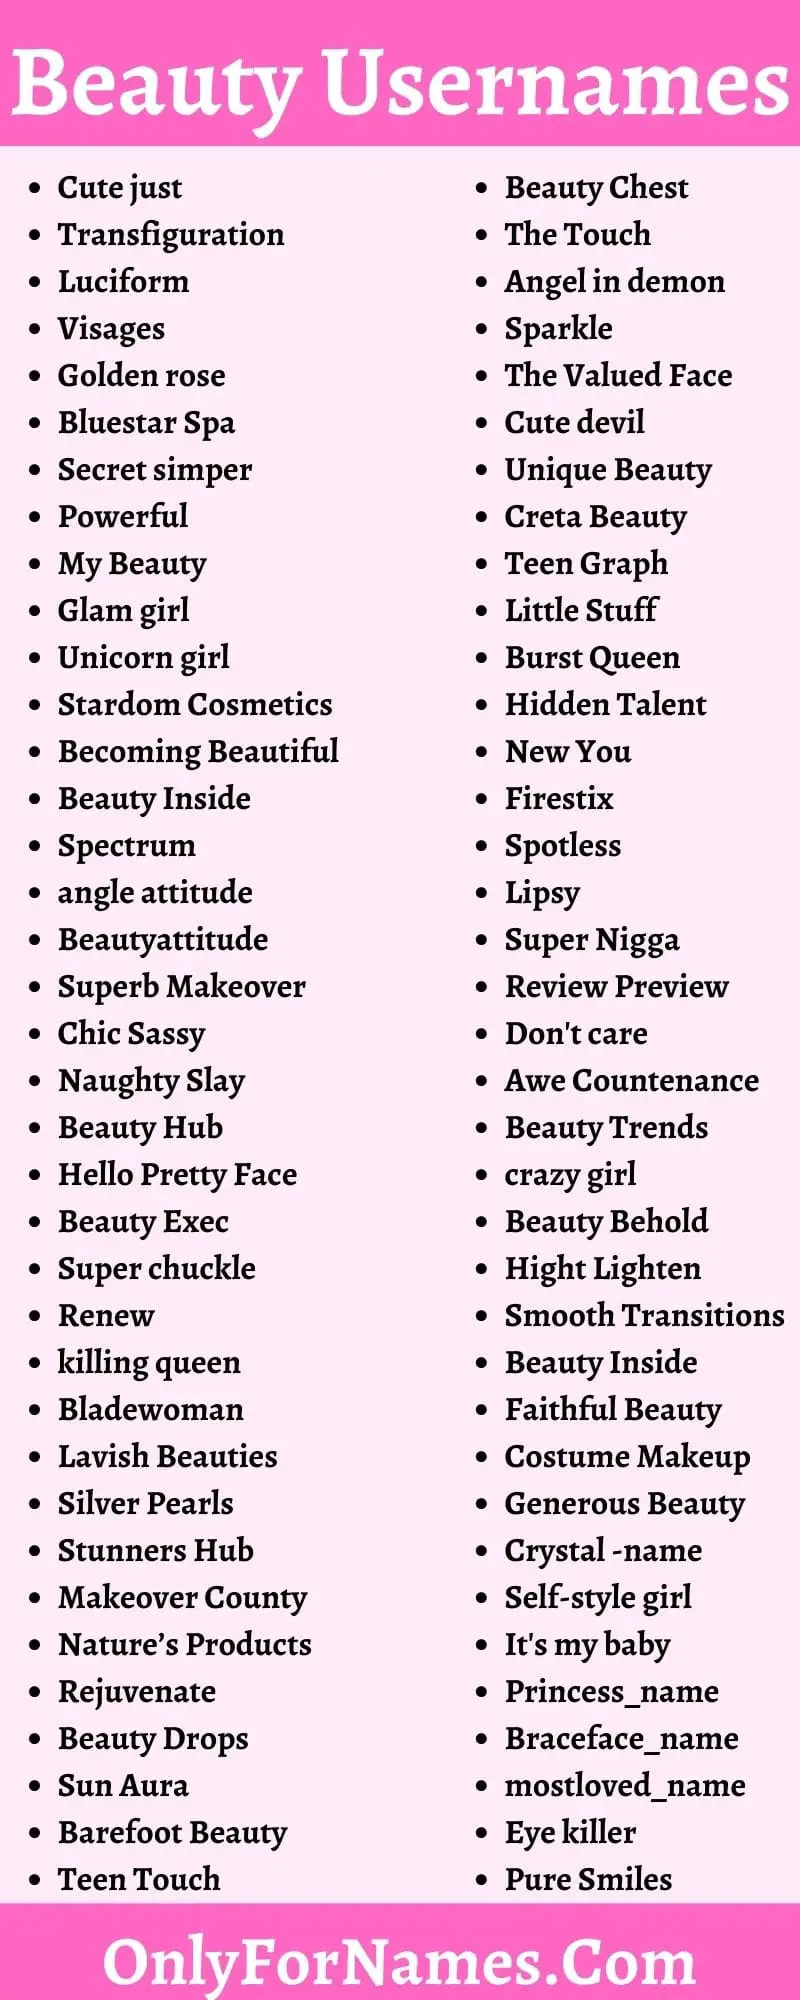 Beauty Usernames